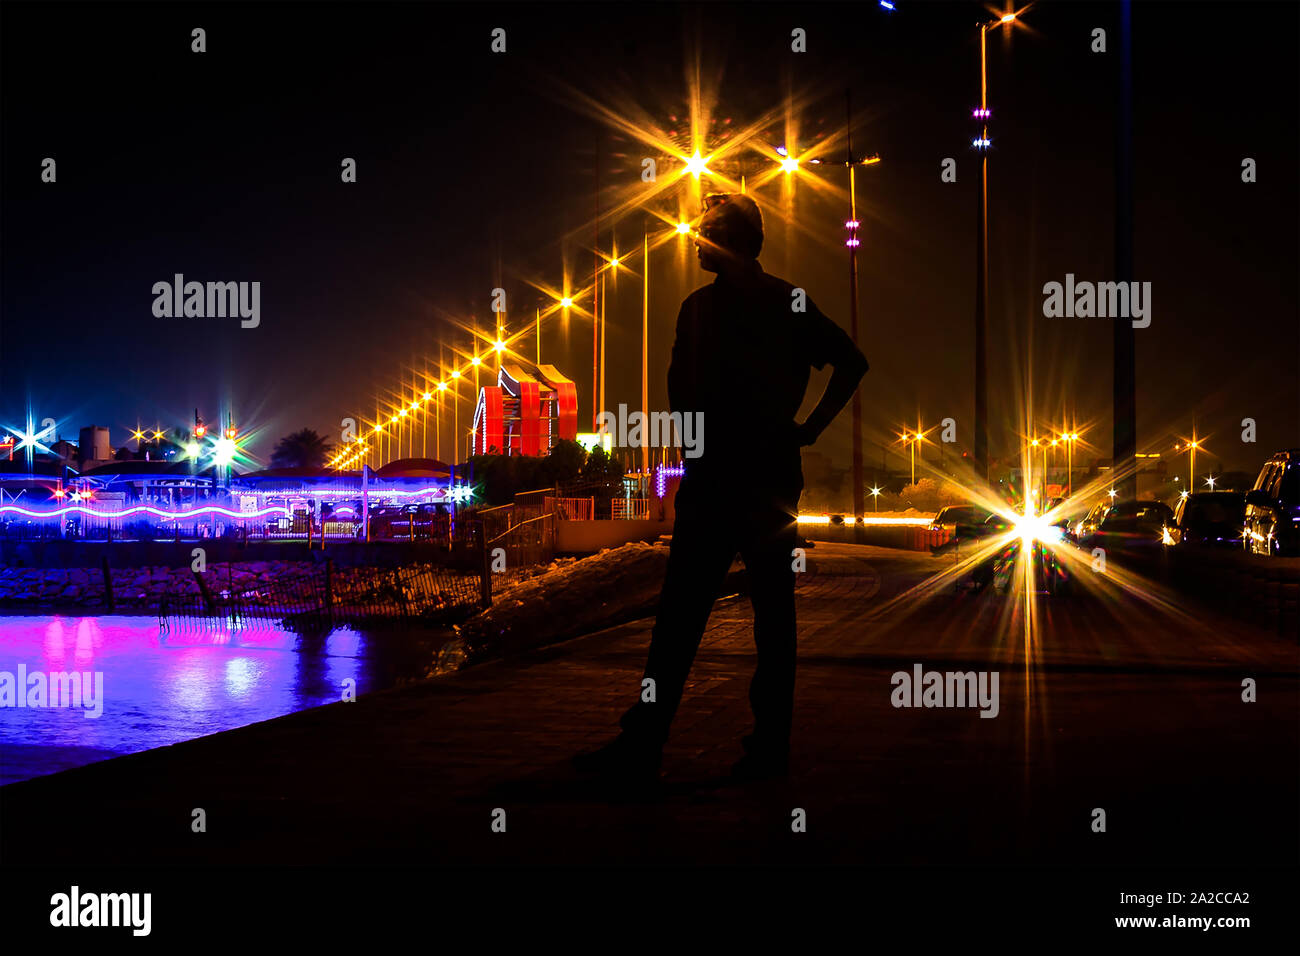 Hombre de pie silueta en la noche estrella burst luz de fondo Foto de stock